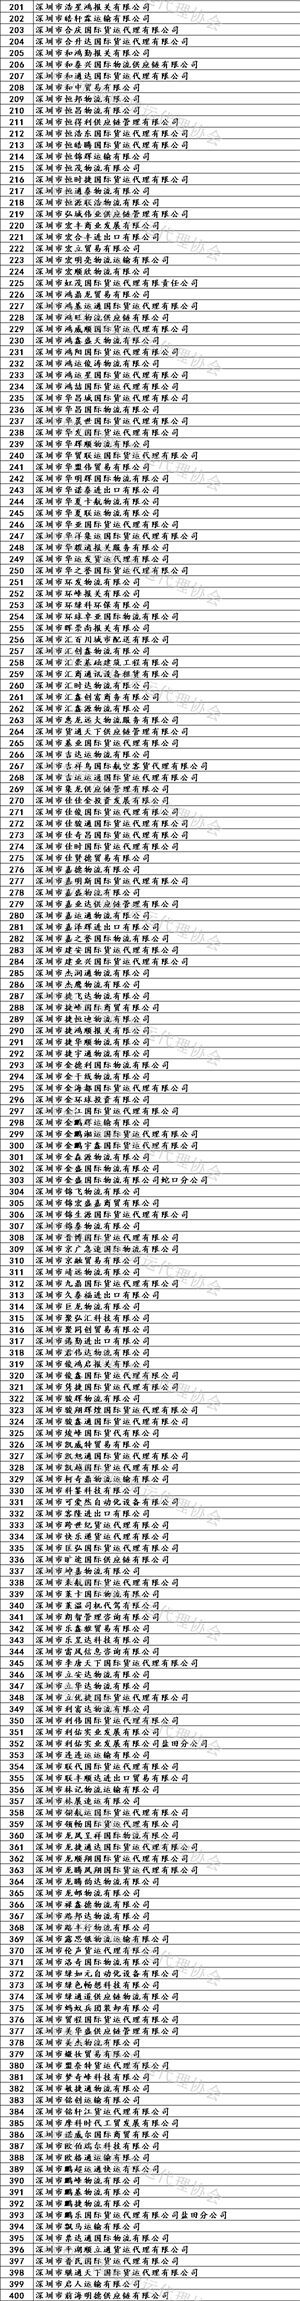 深圳公布国际货代企业黑名单！共计1246家